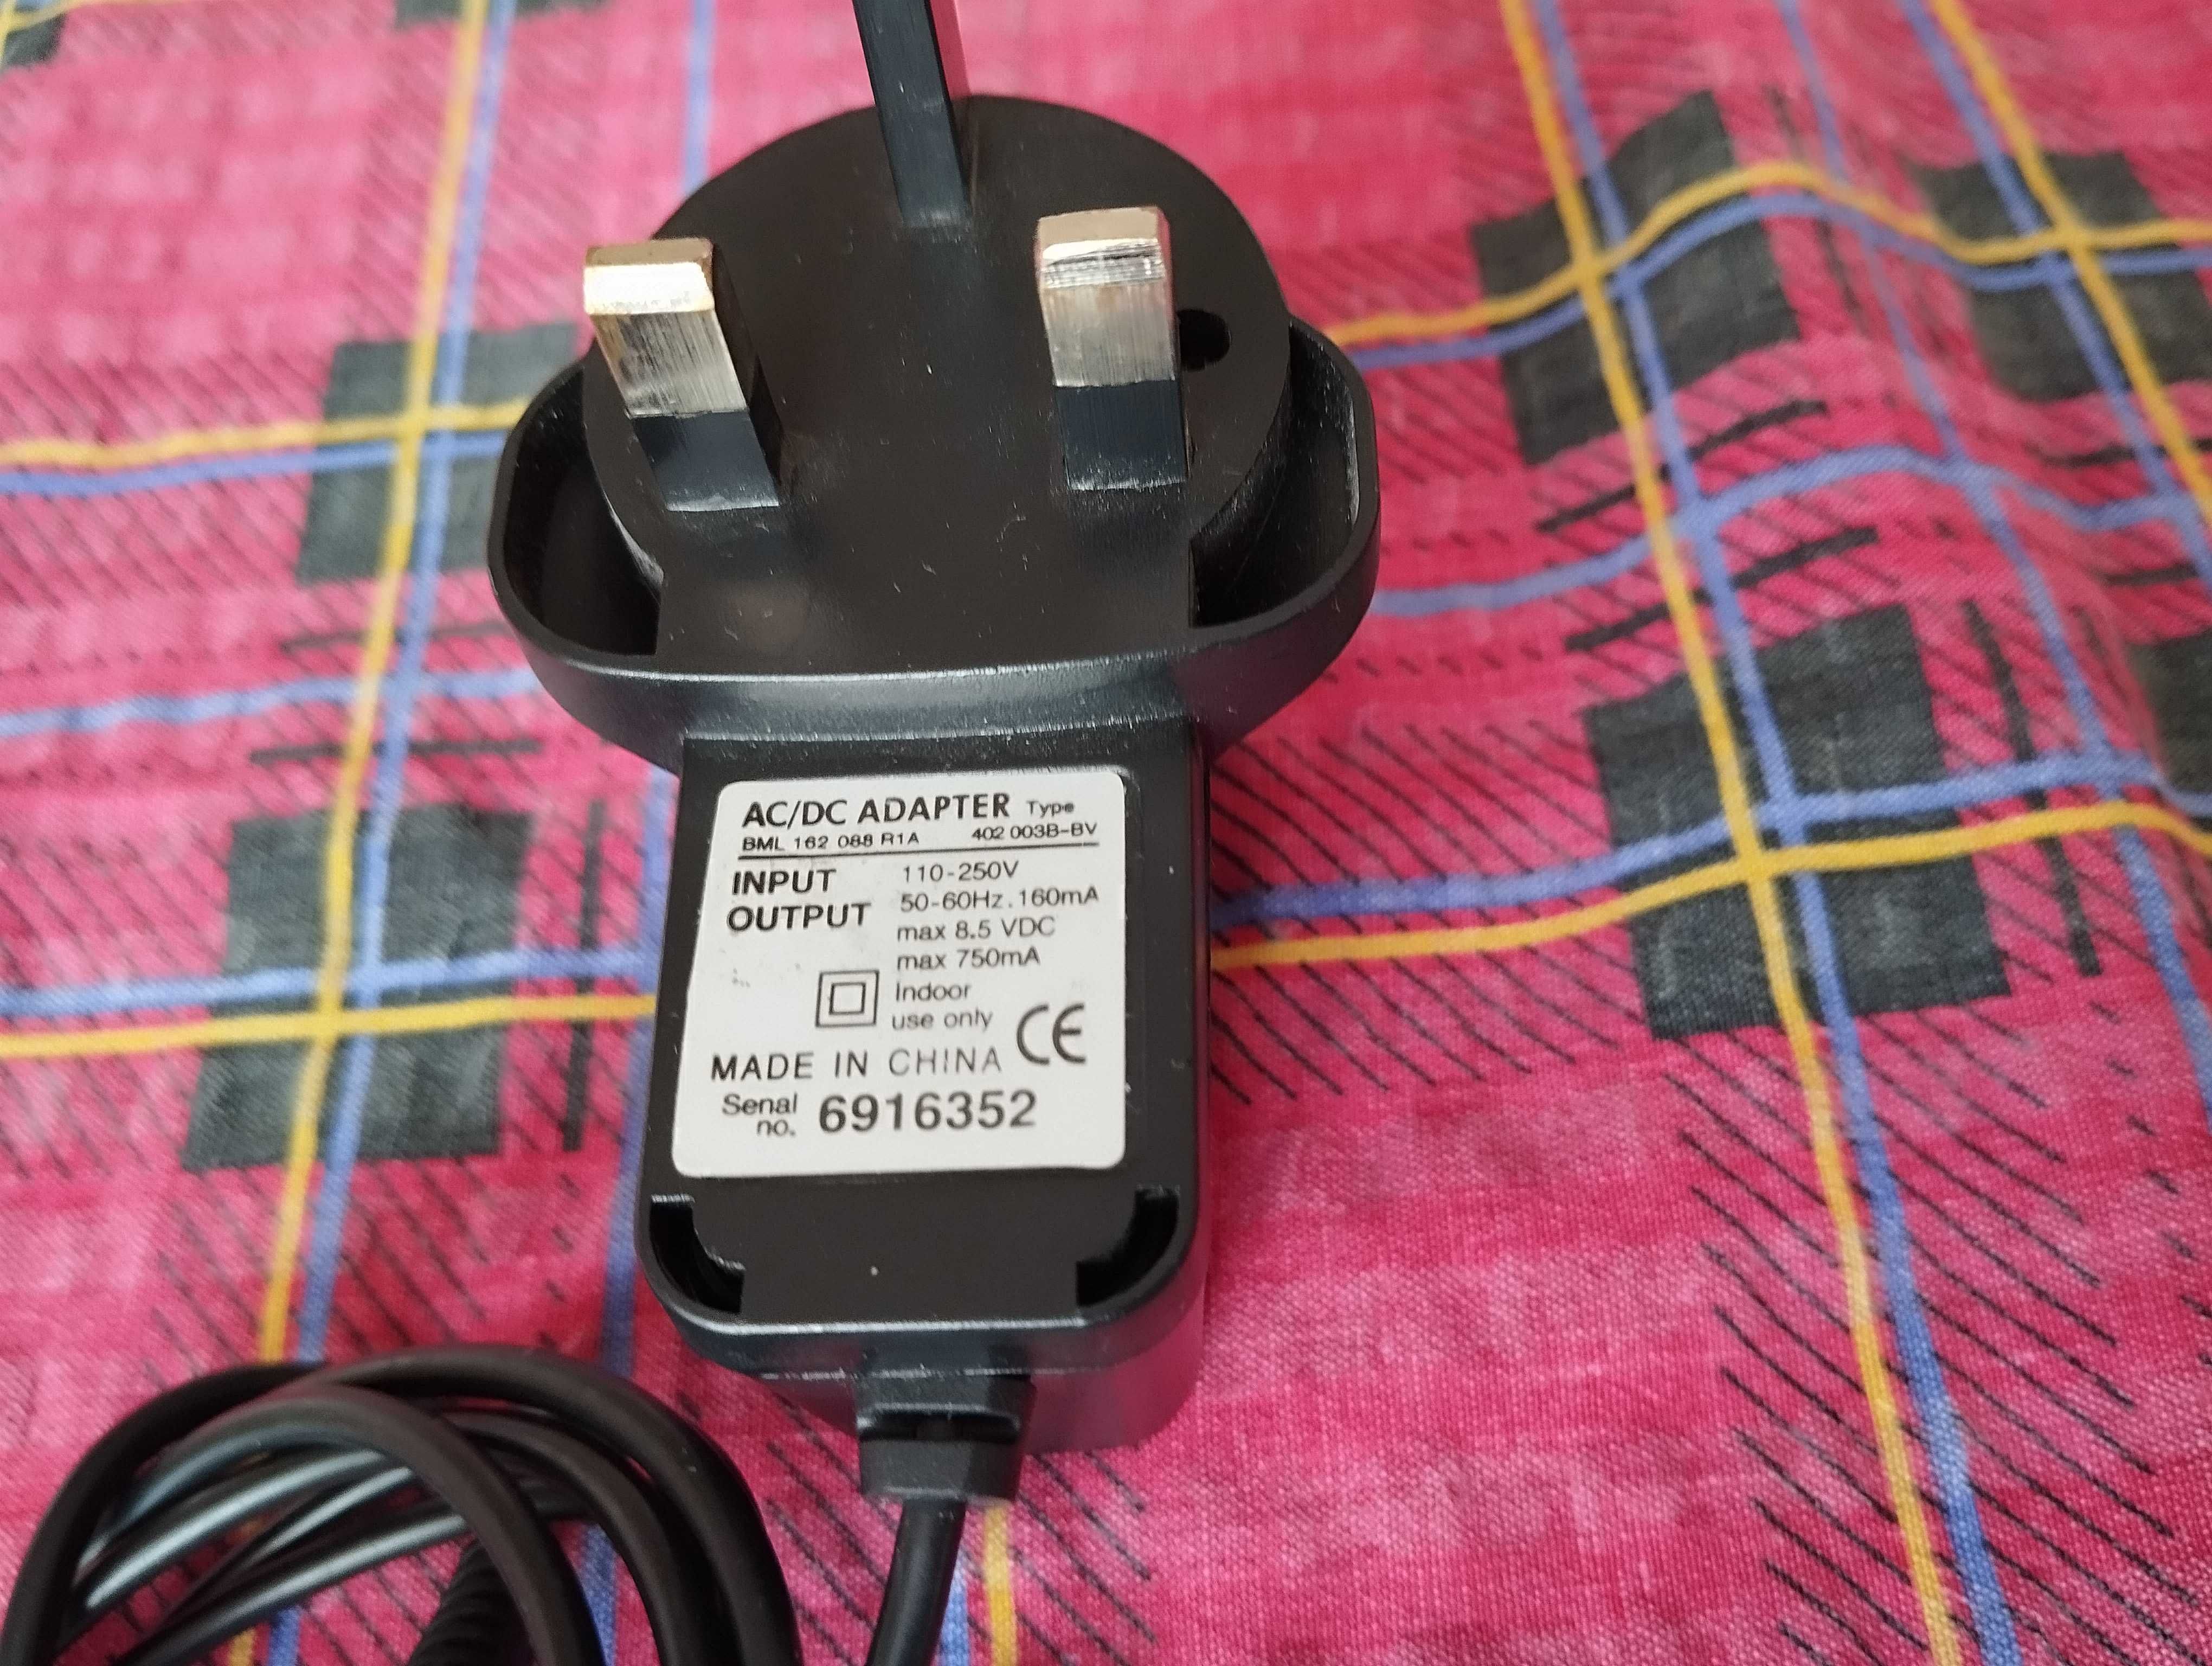 Сетевое зарядное устройство  Ericsson BML 162 088 R1A